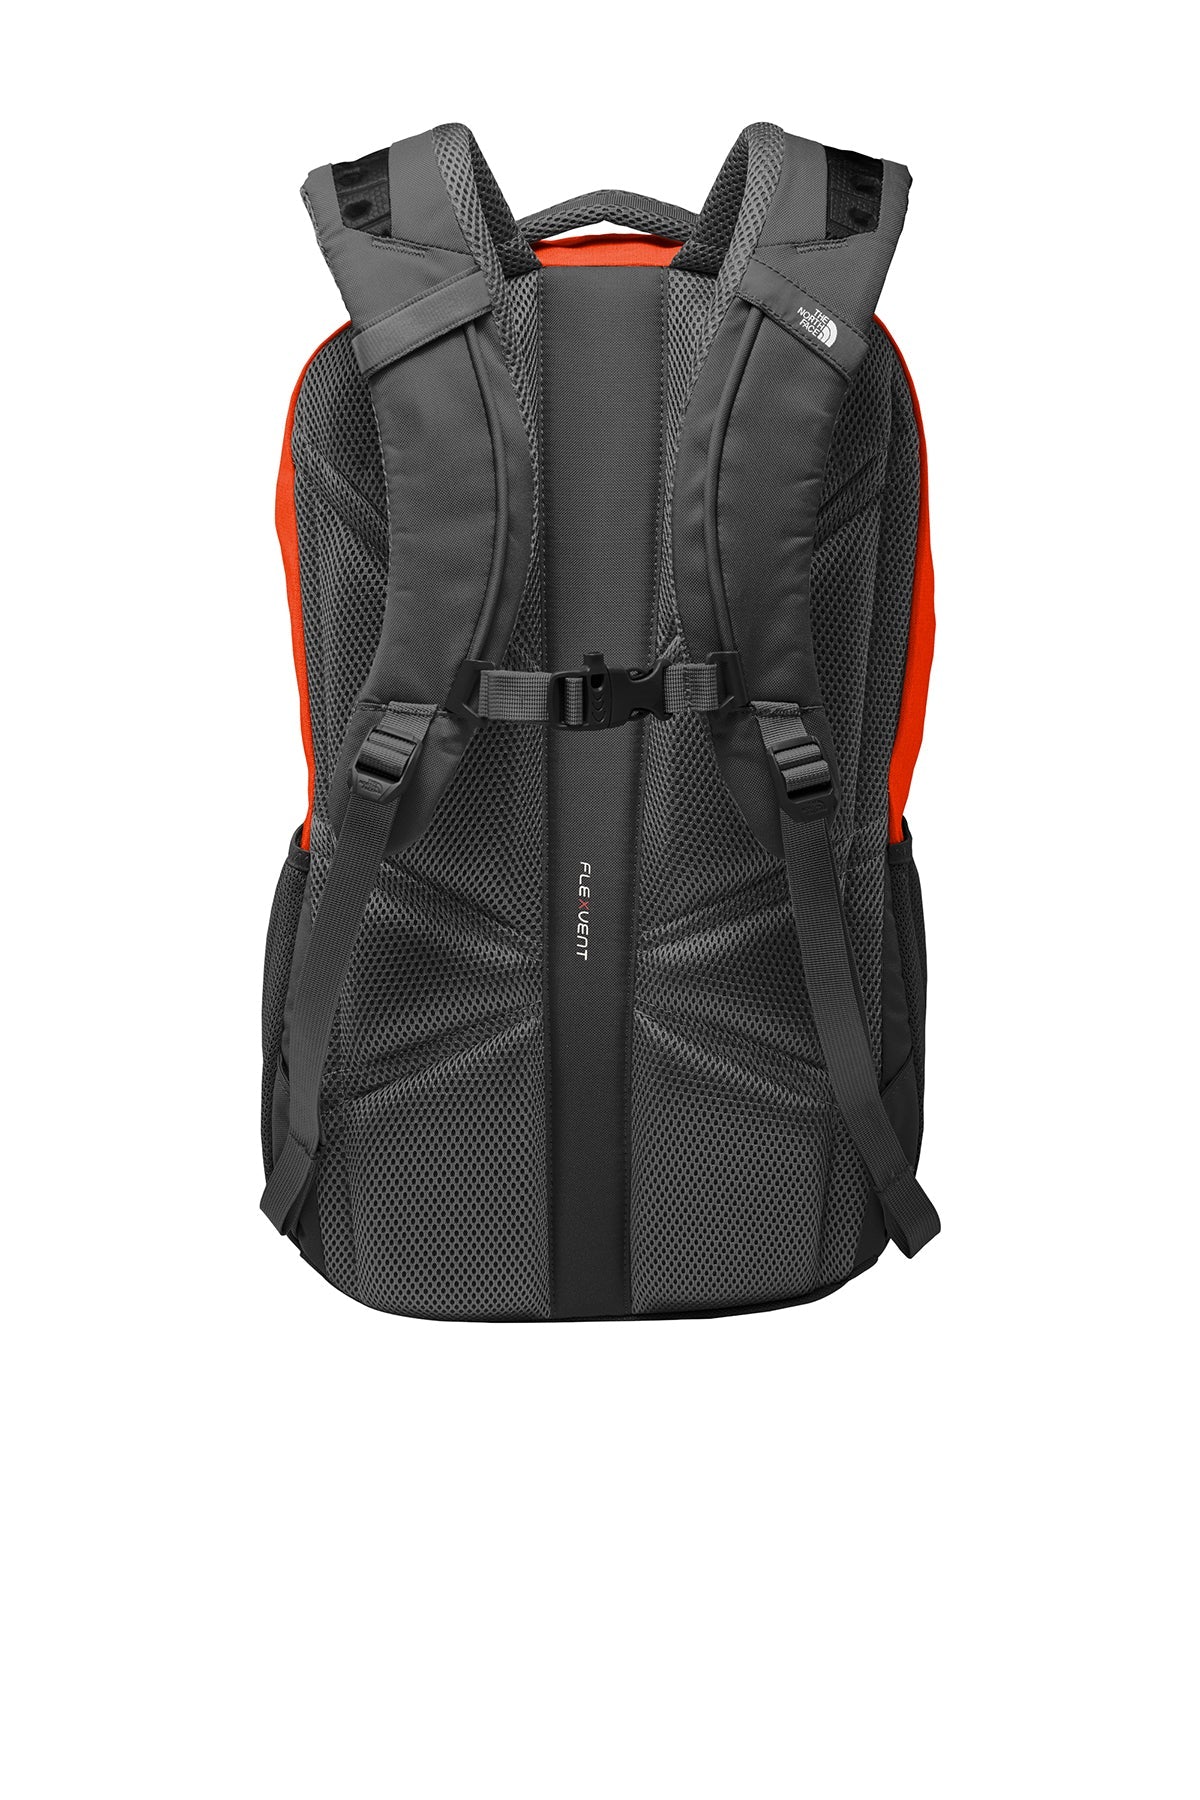 North Face Connector Backpack Tibetan Orange/ Asphalt Grey